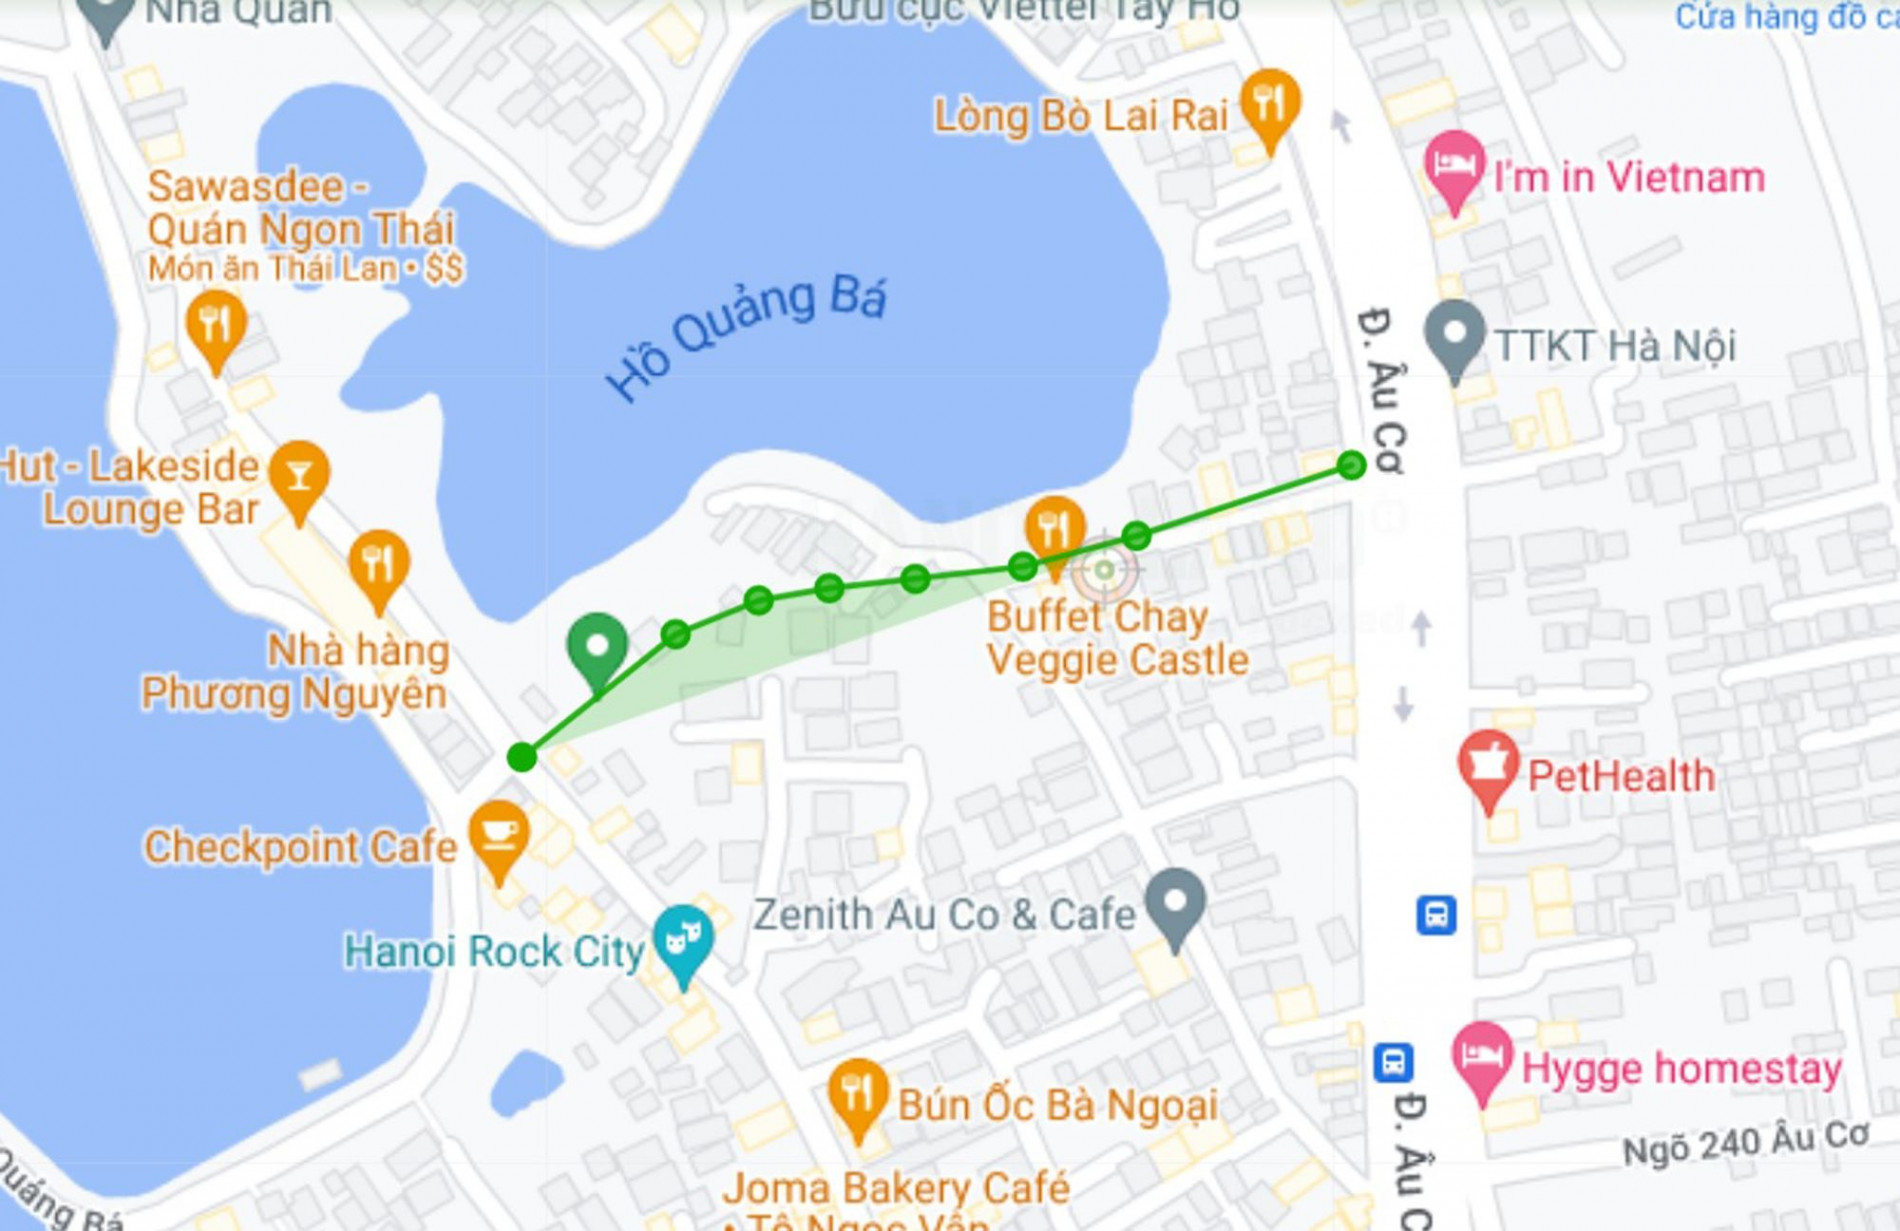 Đường sẽ mở theo quy hoạch ở phường Quảng An, Tây Hồ, Hà Nội (phần 1)